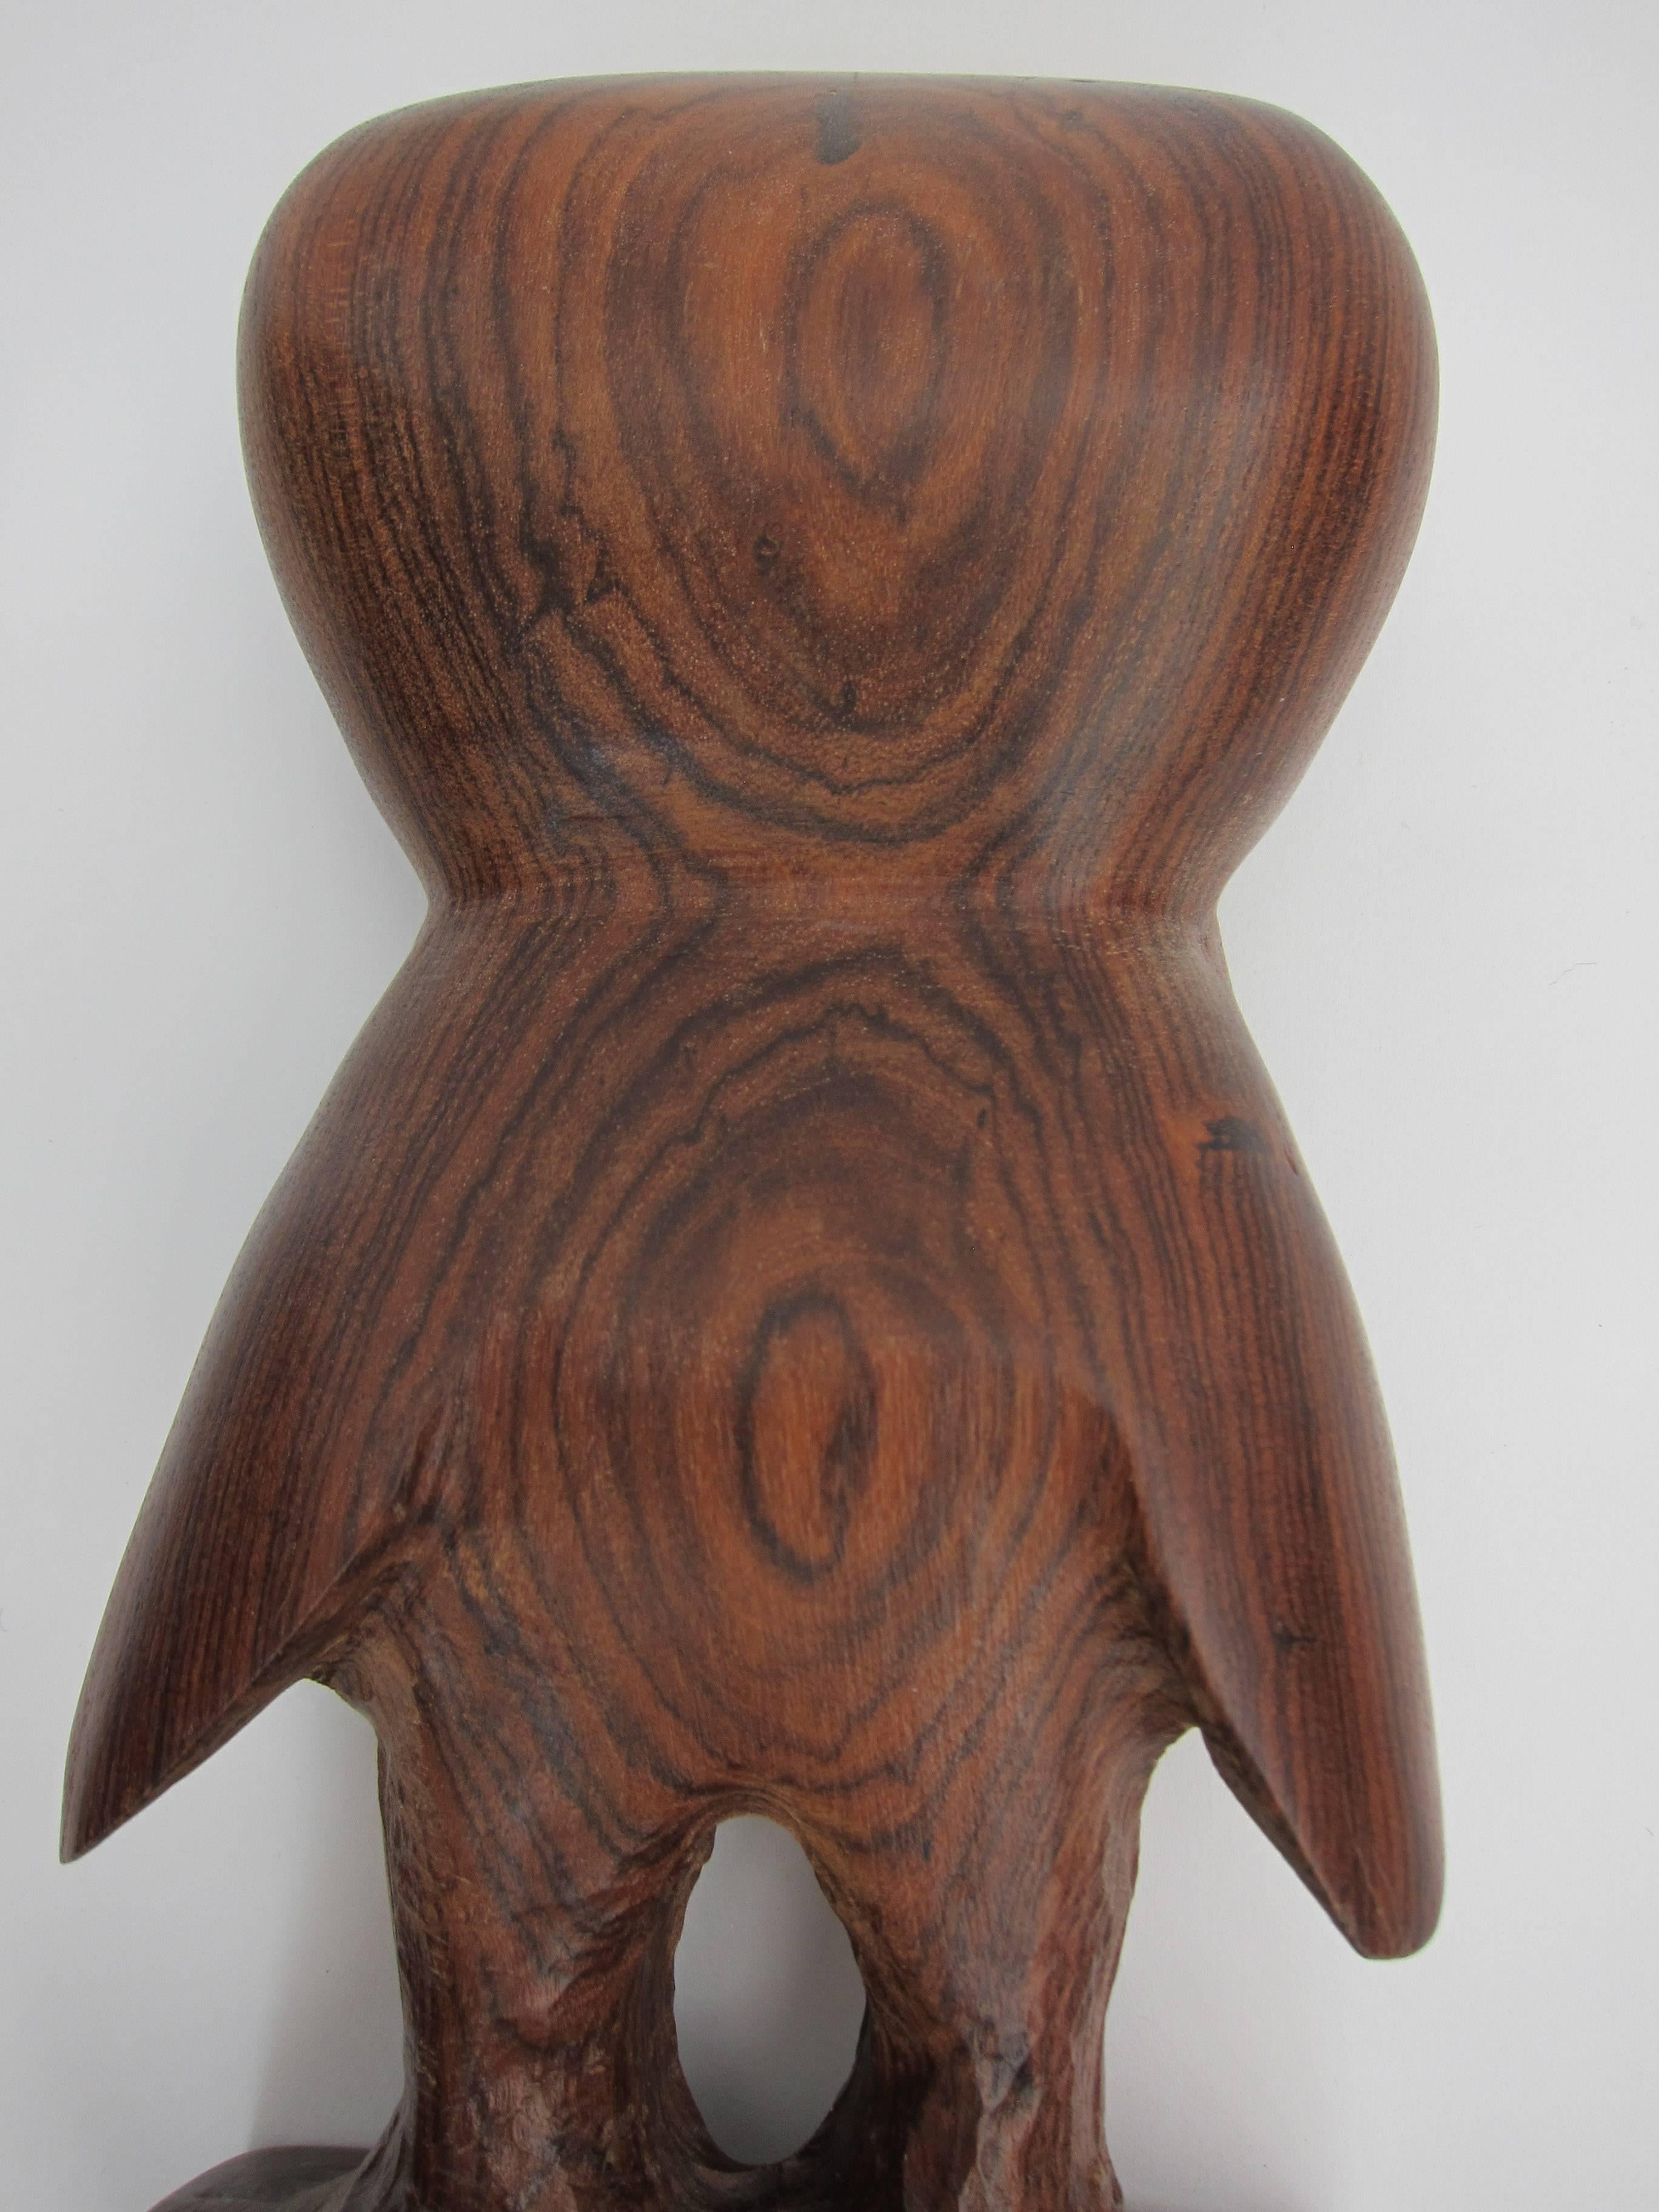 Carved Owl Carving, Don Shoemaker For Sale